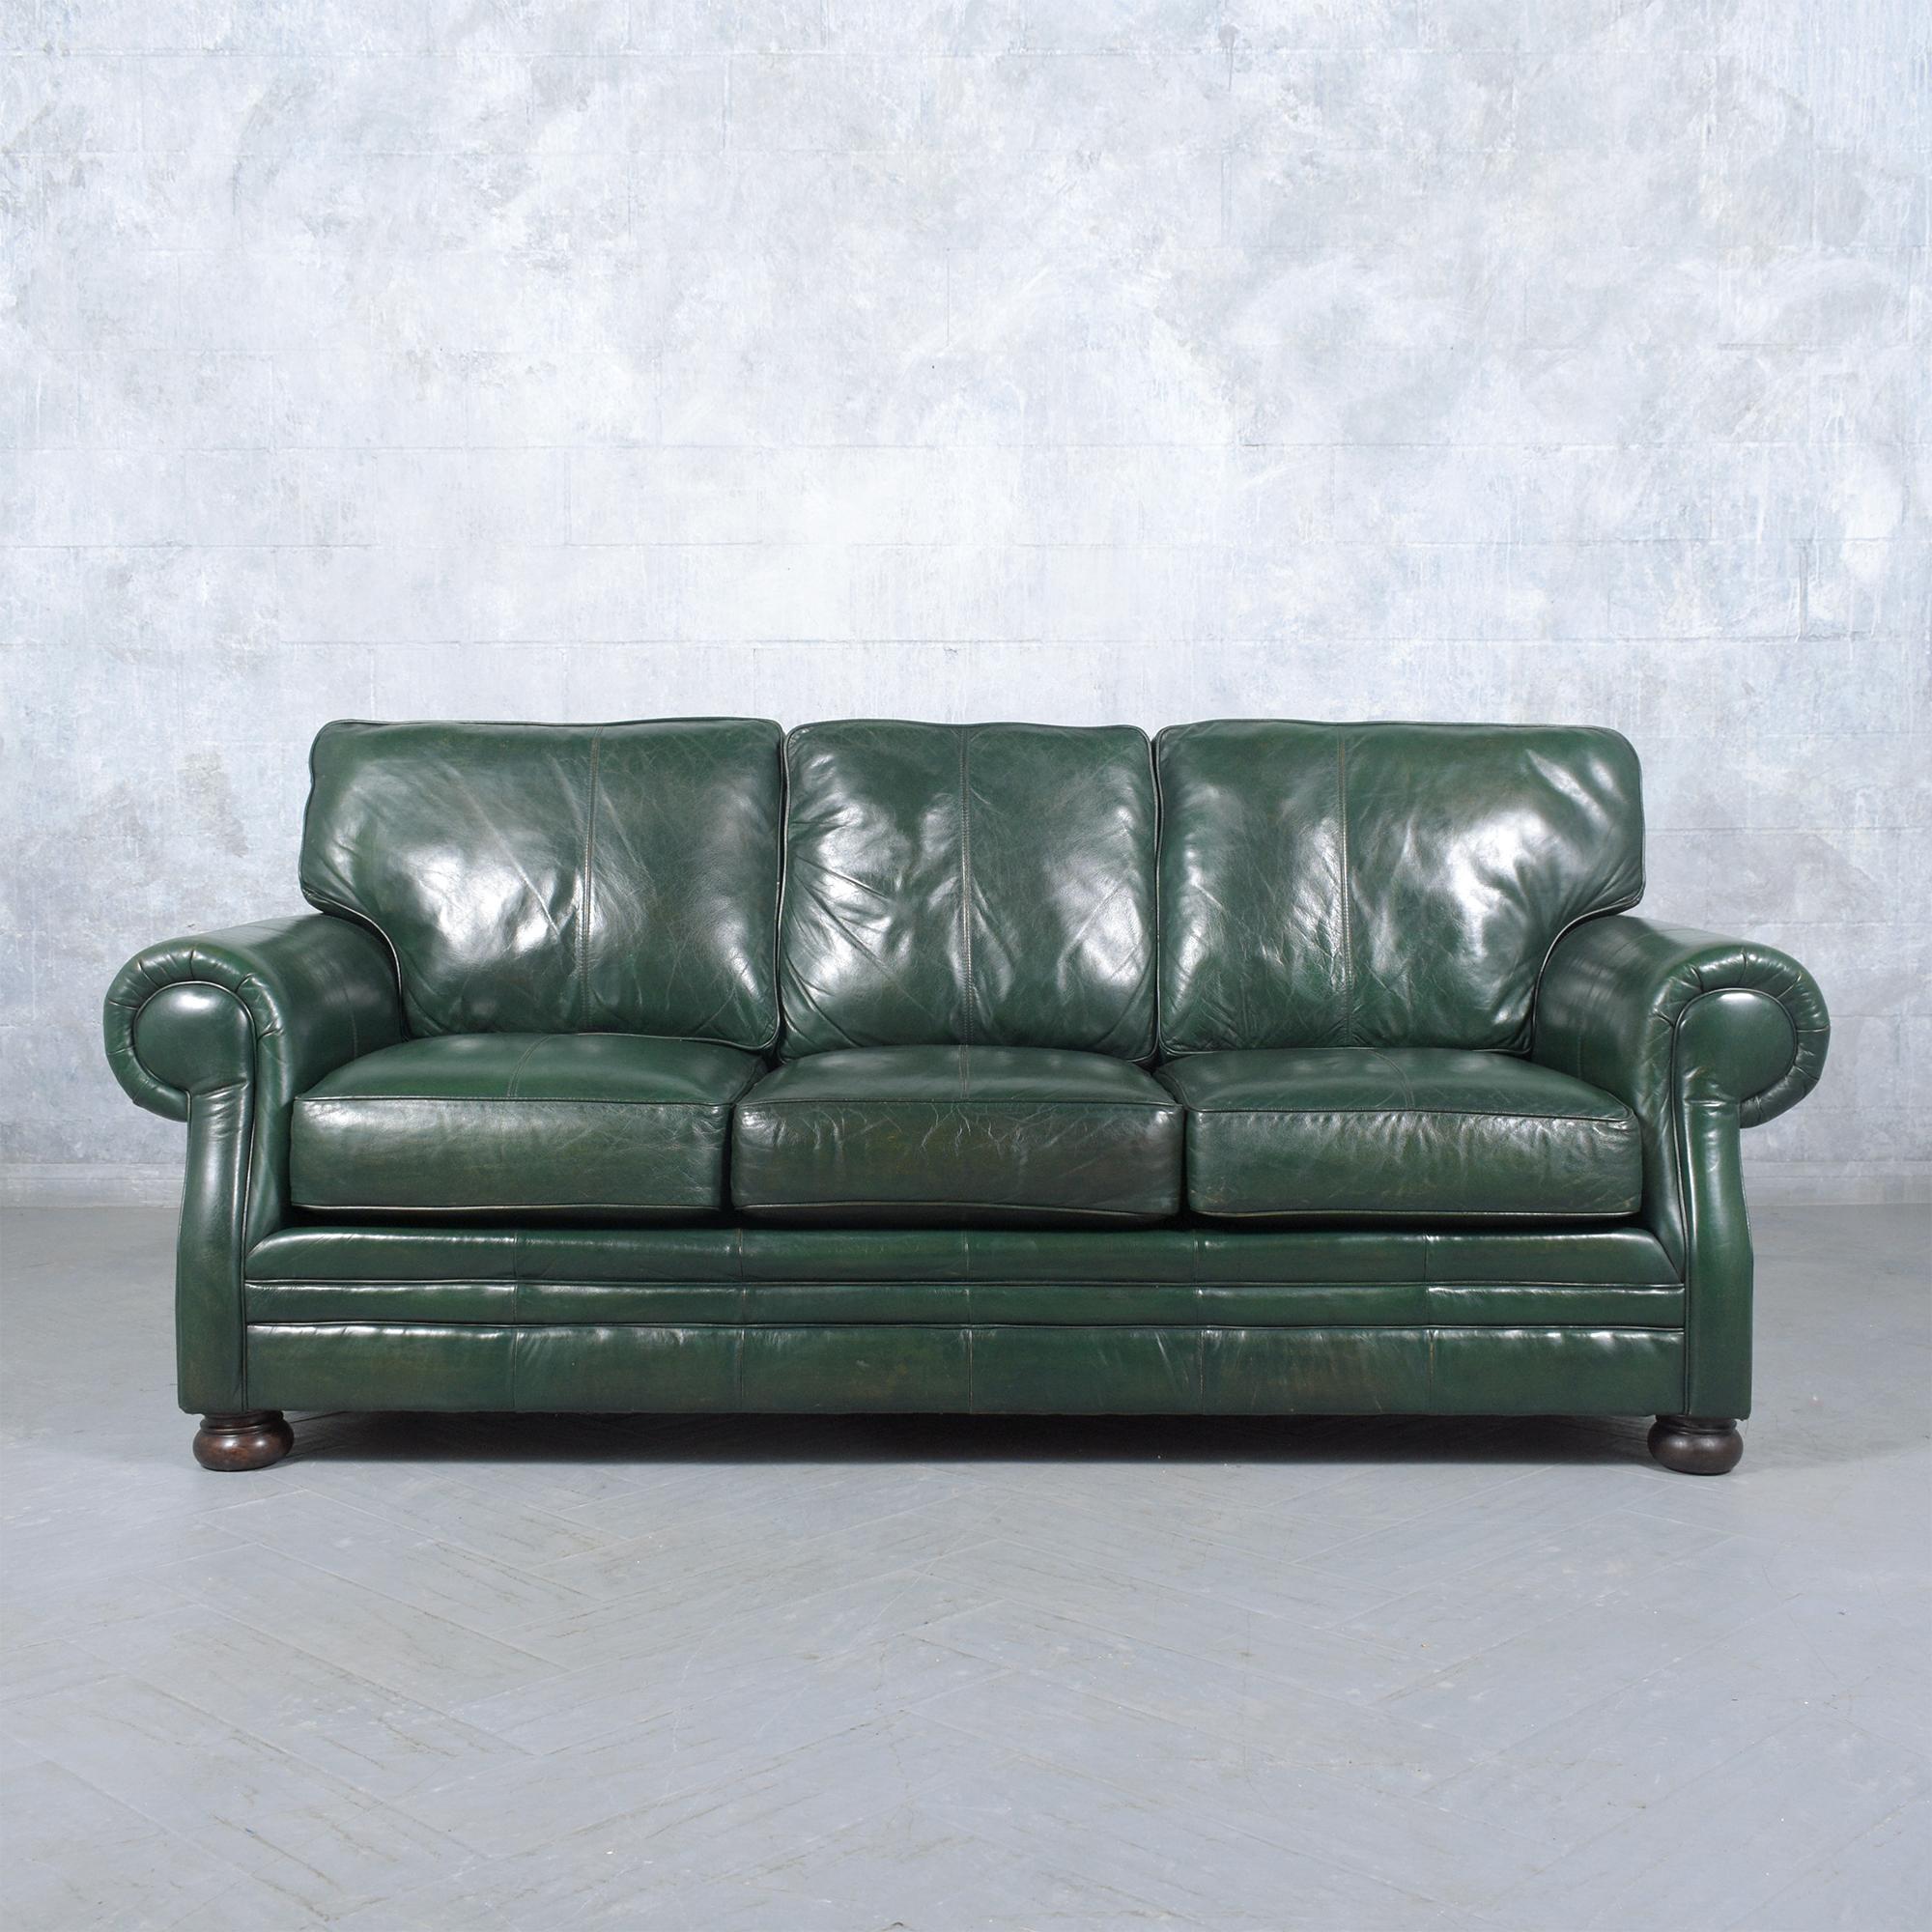 Retournez dans les années 1980 avec cet extraordinaire canapé vintage, magnifiquement fabriqué en cuir et méticuleusement restauré par notre équipe d'artisans professionnels experts. Ce canapé présente une teinture vert foncé élégante et